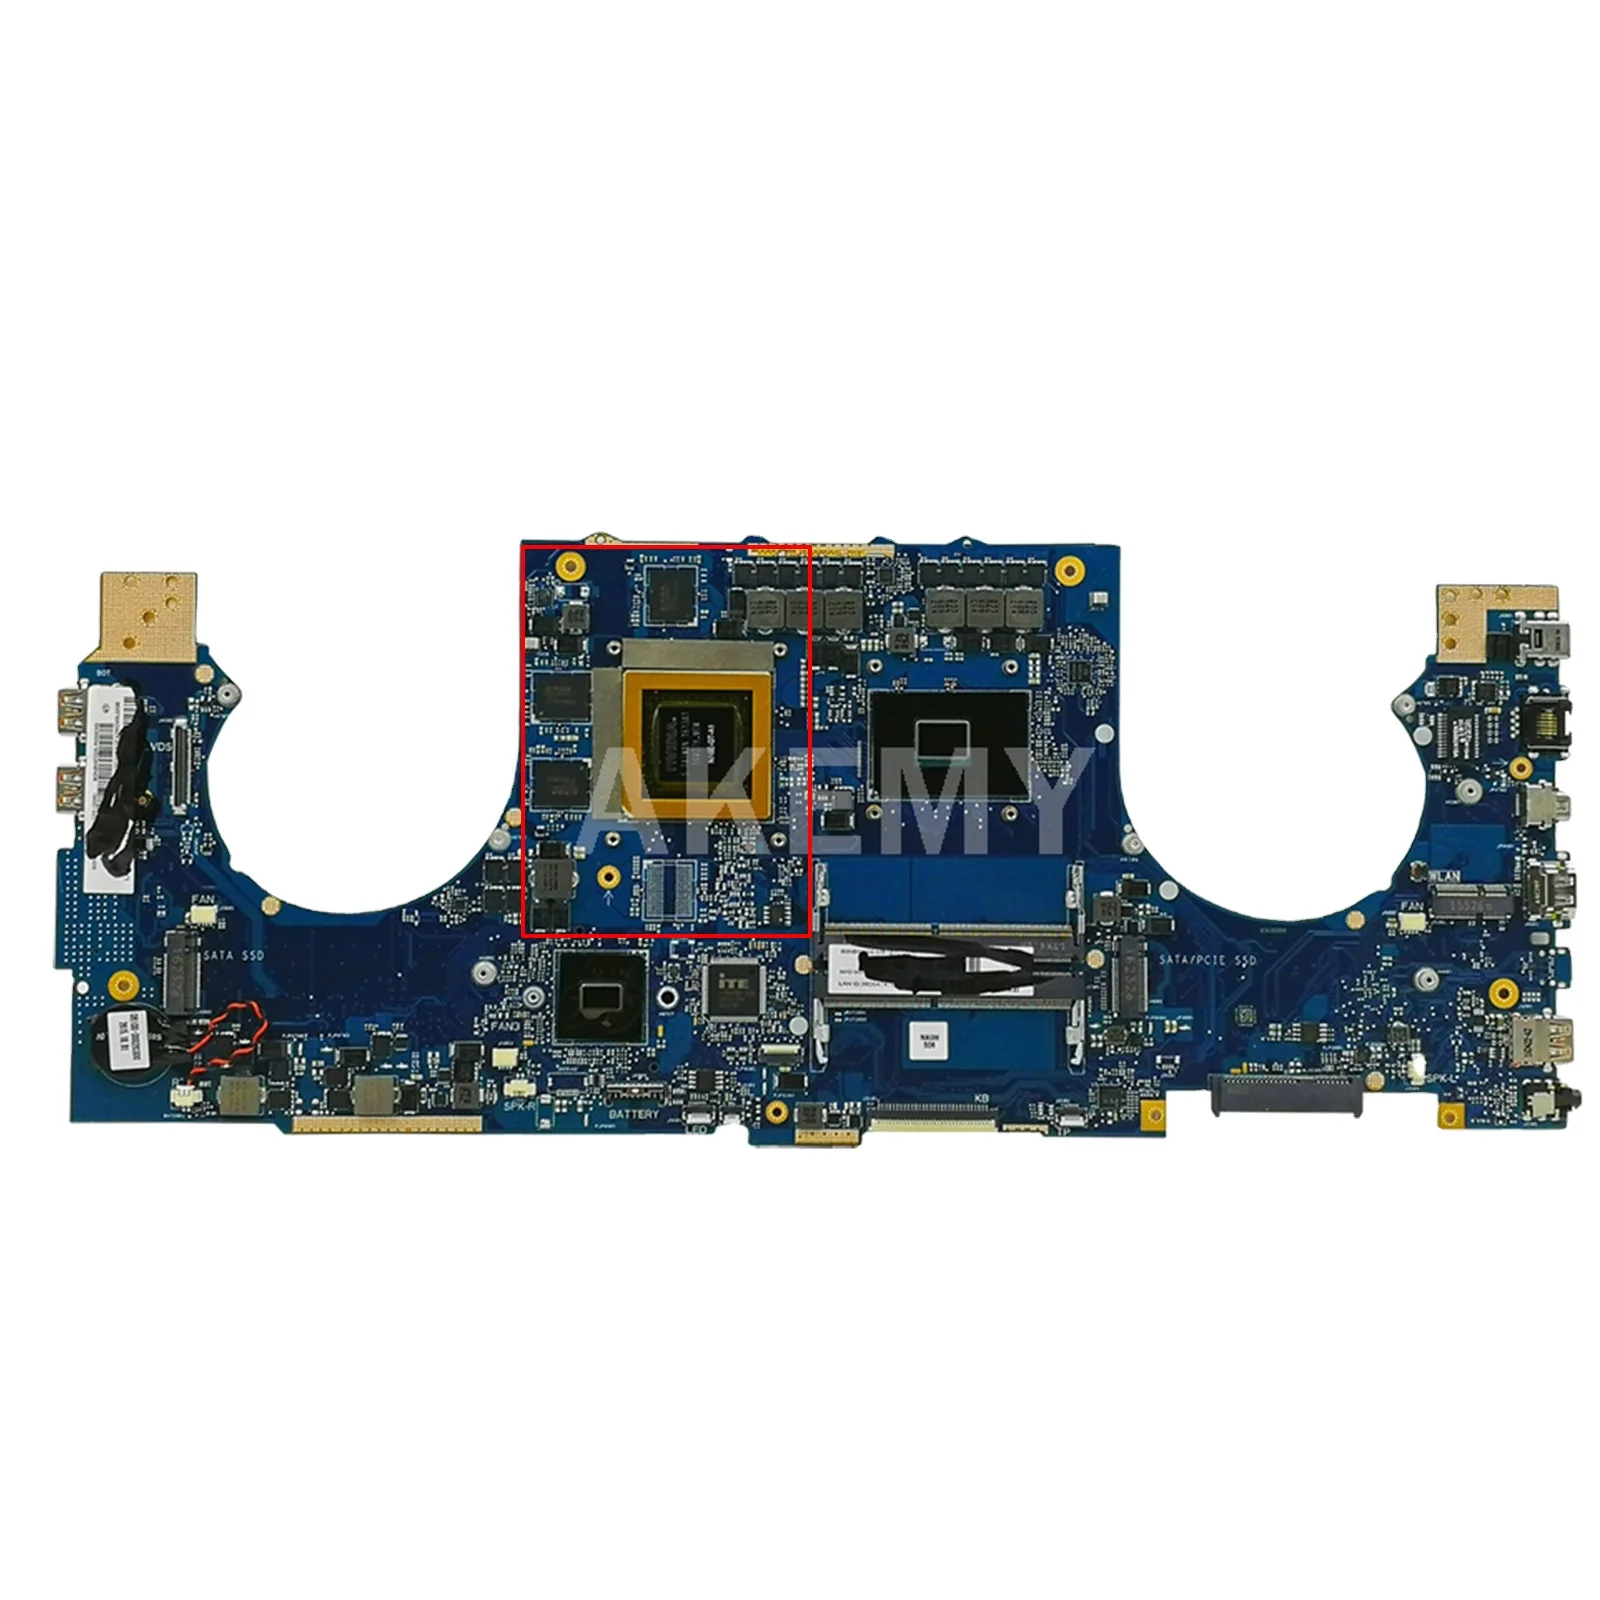 

GL702VT Motherboard for ASUS GL702VT S7VT Laptop Motherboard Mainboard I5-6300HQ I7-6700HQ CPU GTX970M-V3G GPU